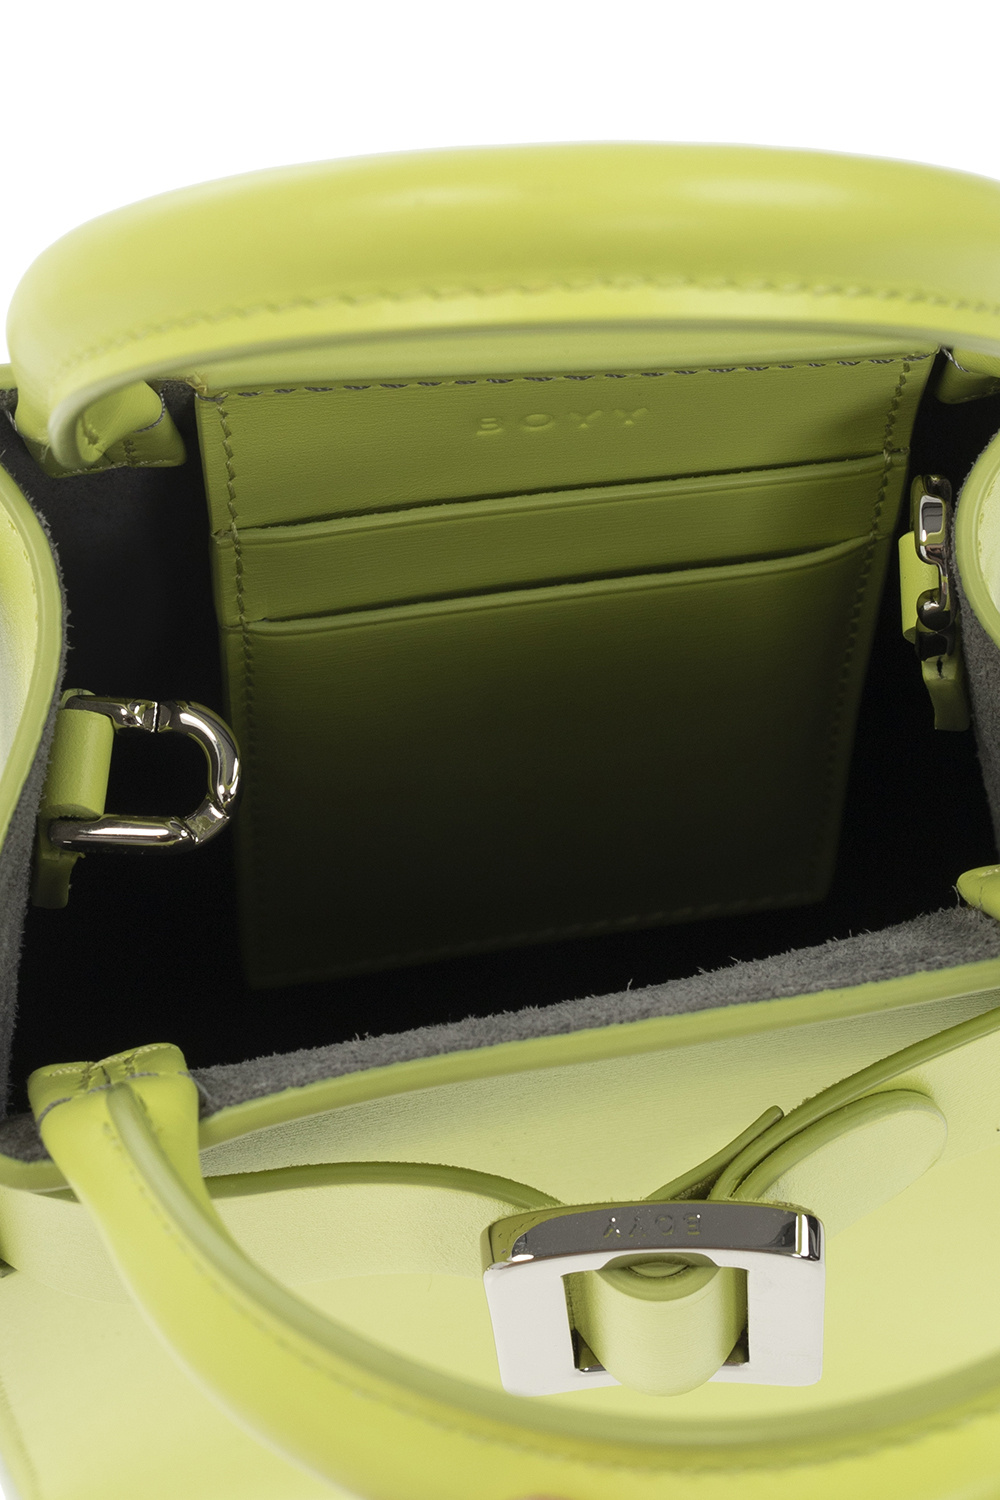 Lime Bobby Charm Mini Bag